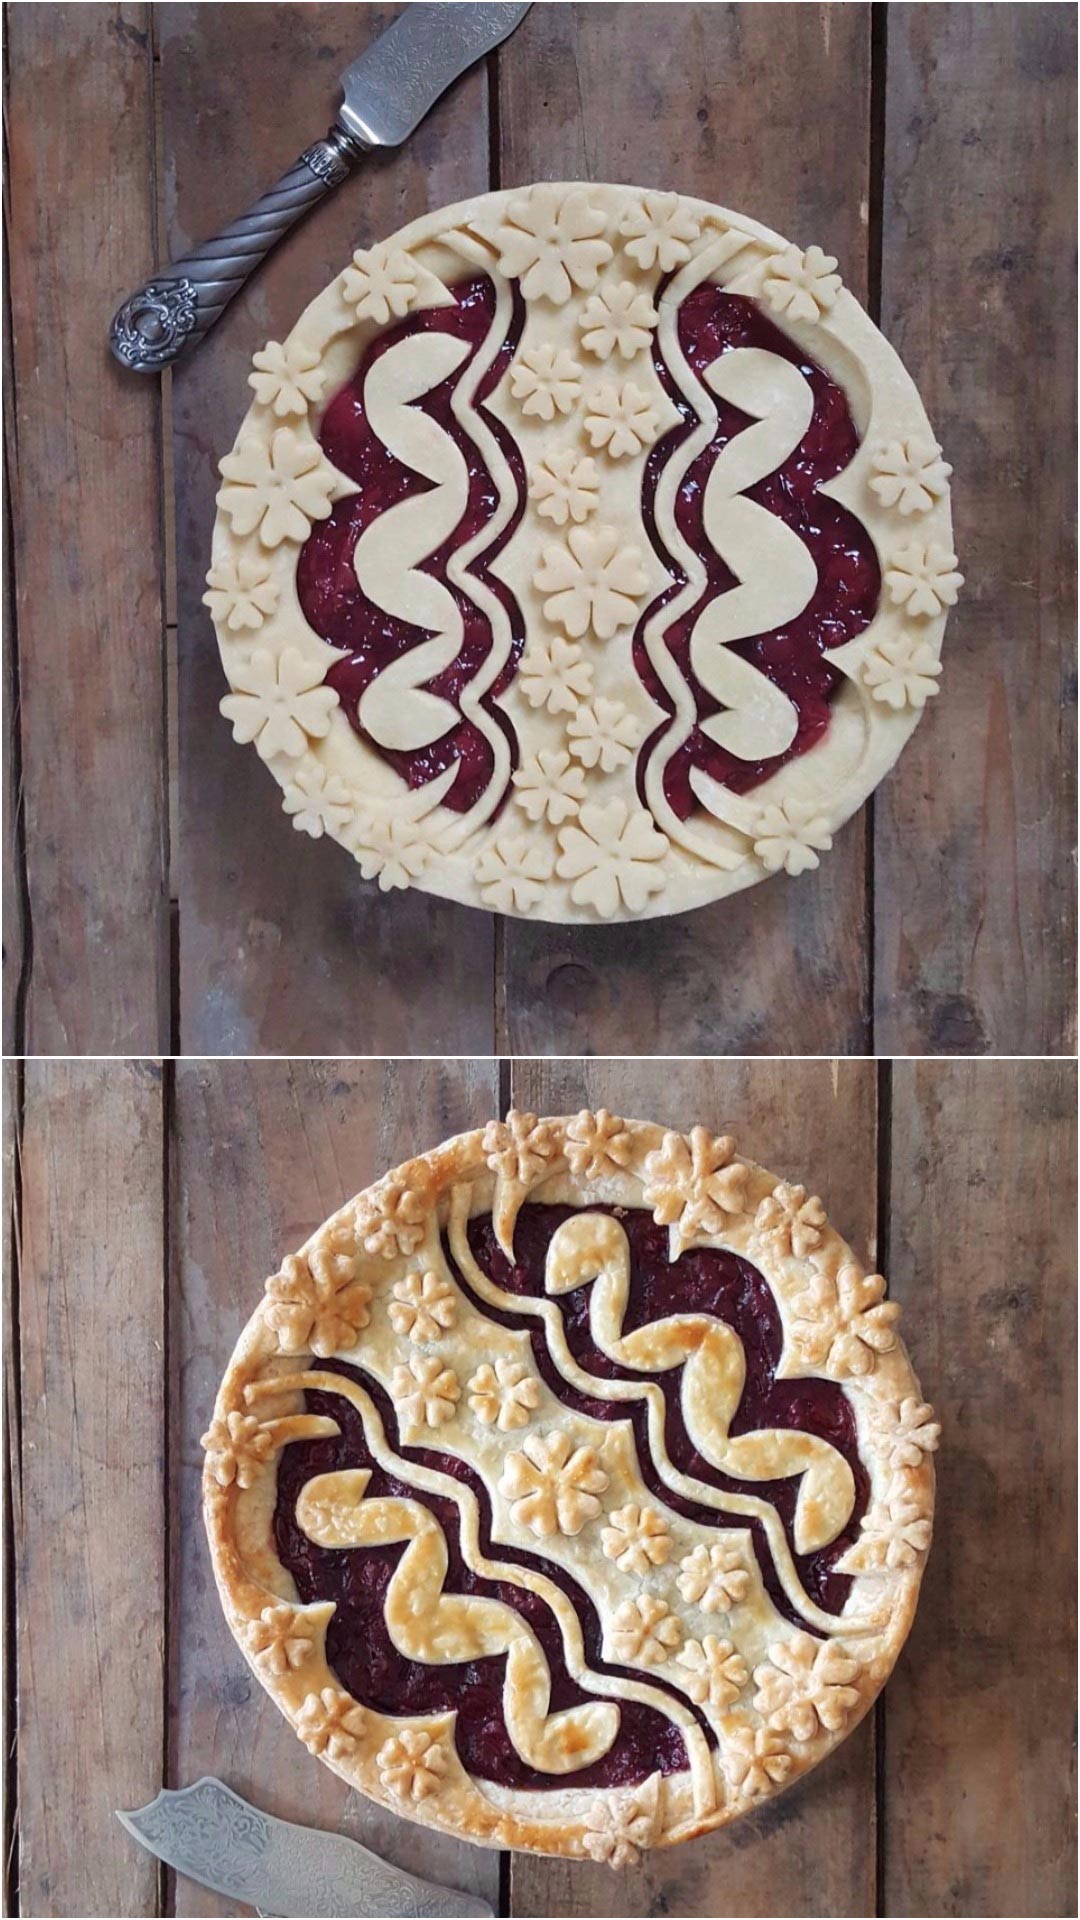 Замысловатые пироги, пироги до  после выпекания, Карин Пфайф Бошек, Karin Pfeiff Boschek